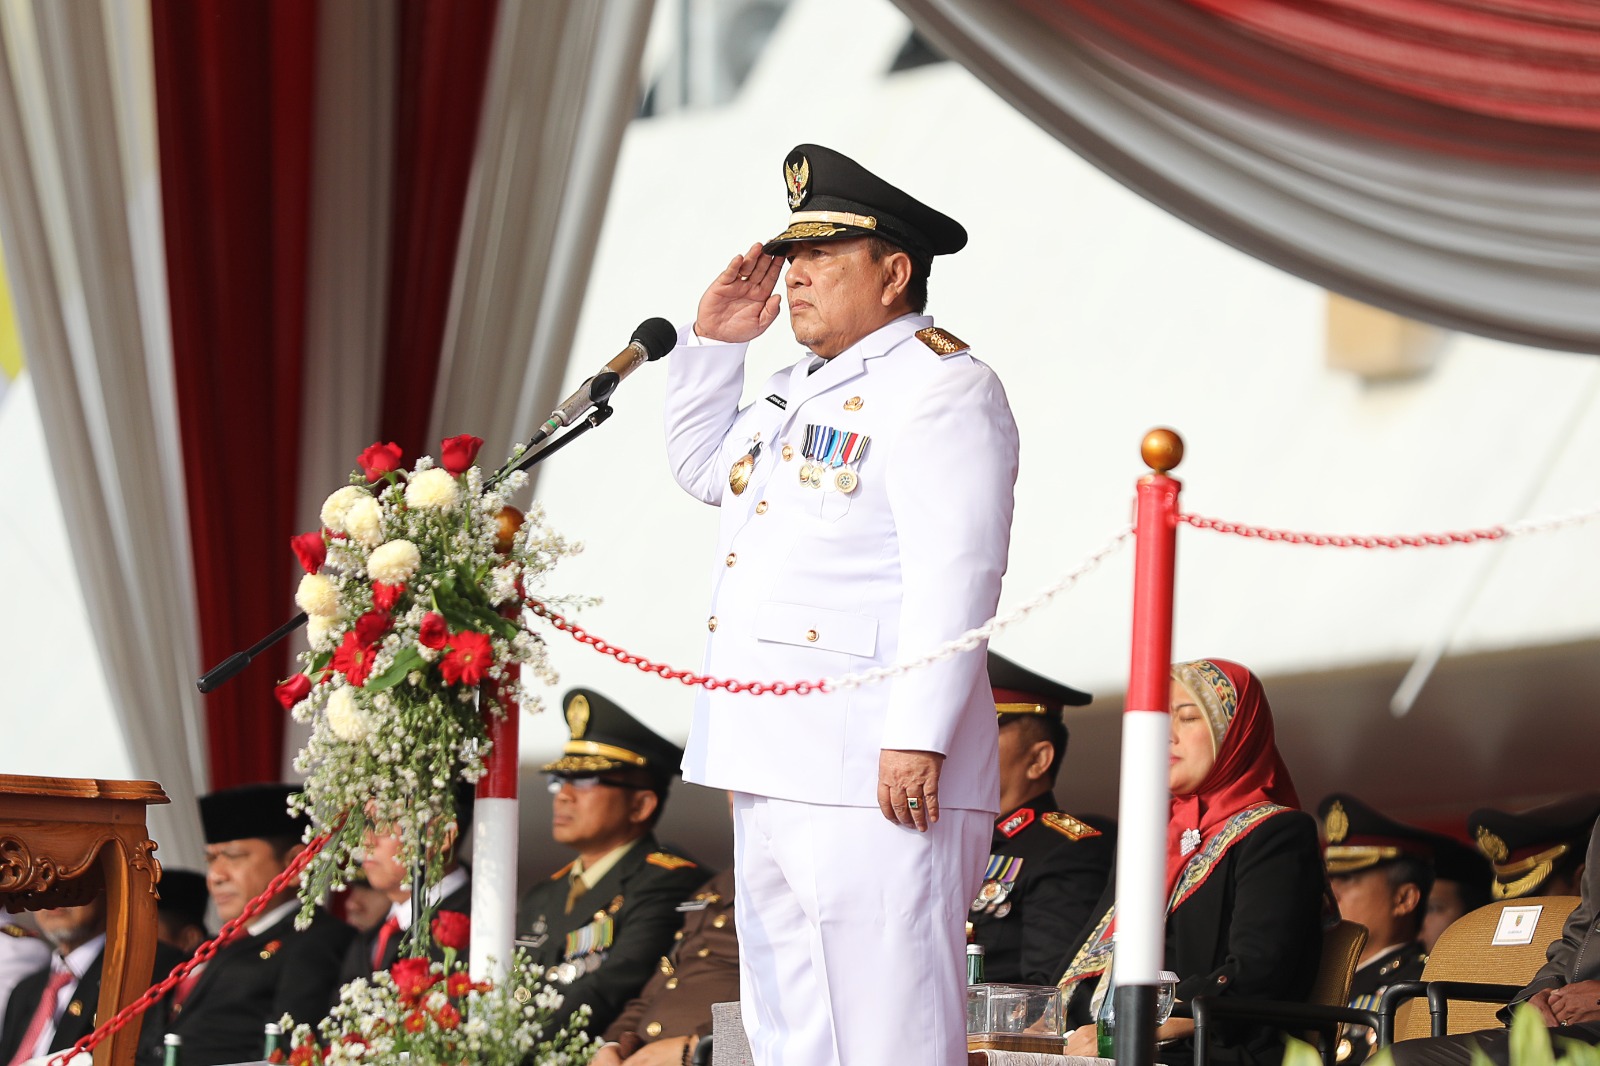 Jadi Inspektur Upacara HUT RI ke-78, Gubernur Arinal Kobarkan Semangat Membangun Daerah, Persiapkan Diri Menuju Indonesia Emas 2045